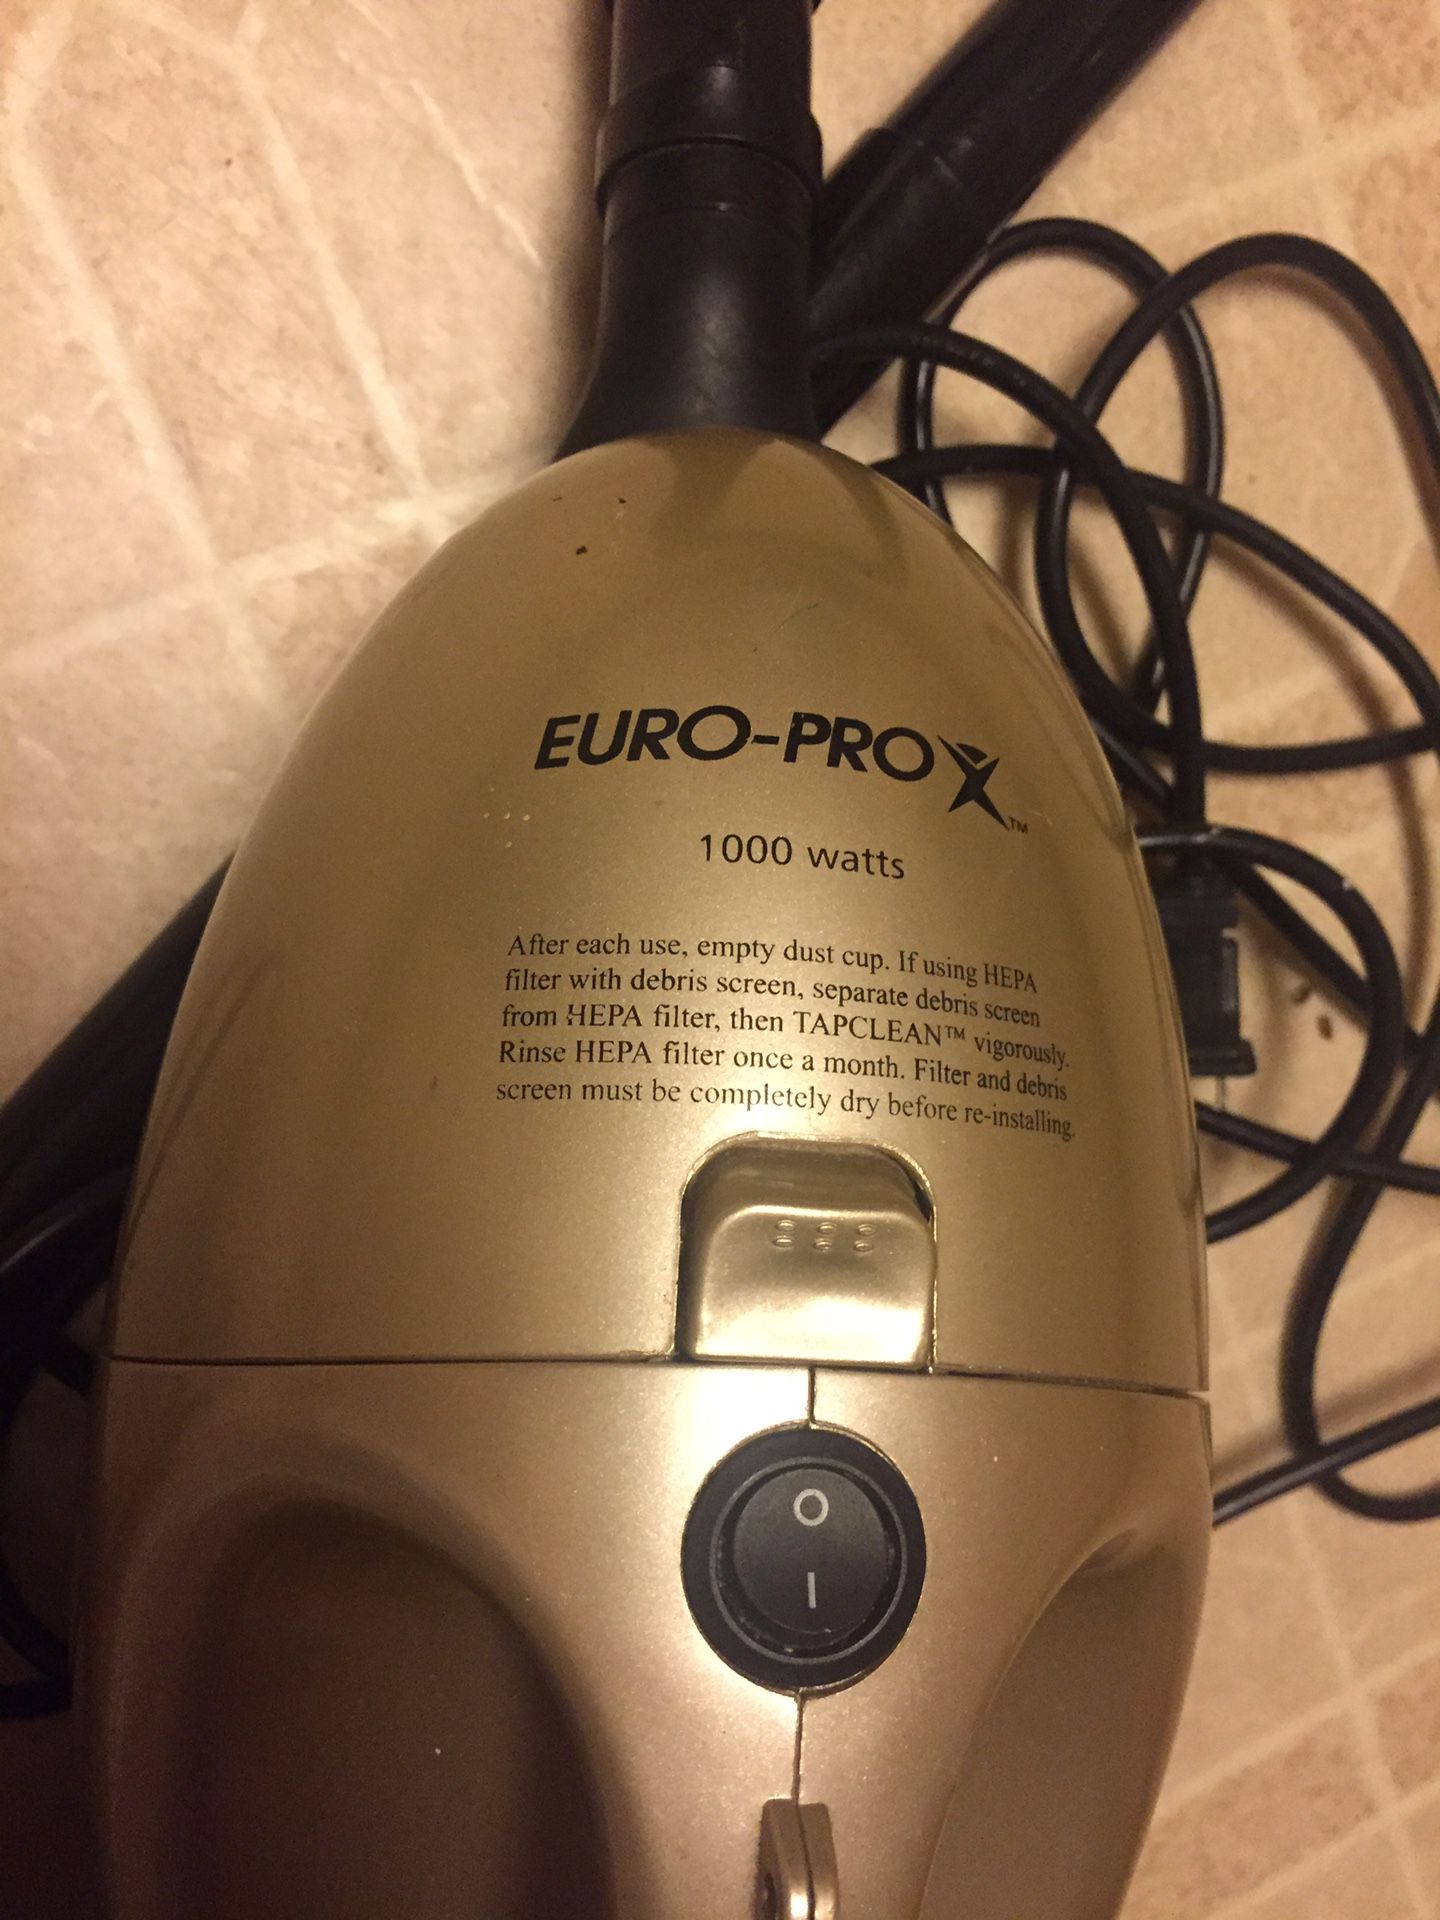 Shark handheld vacuum